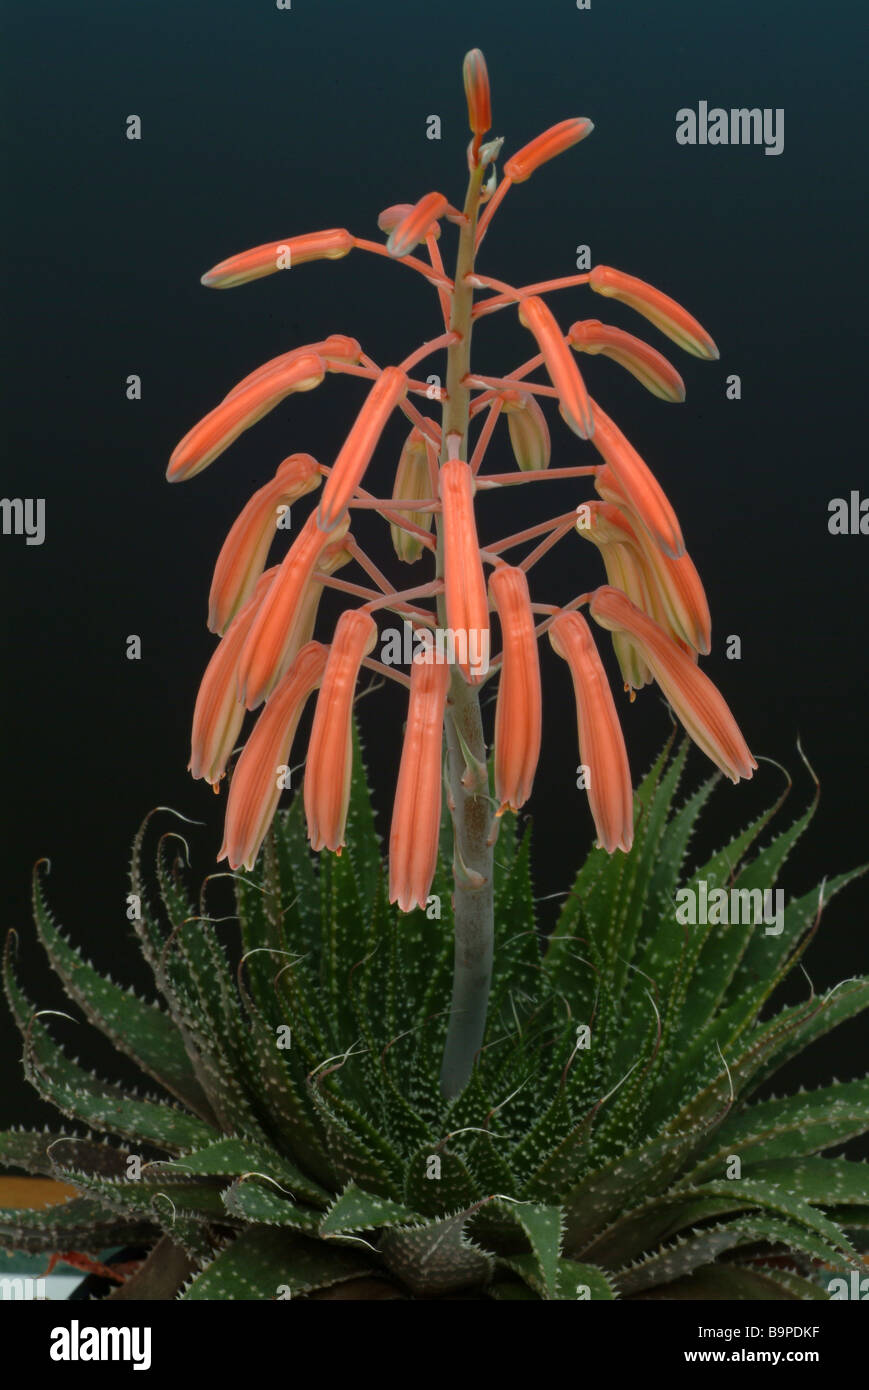 Blooming medicinal plant Aloe Vera Stock Photo